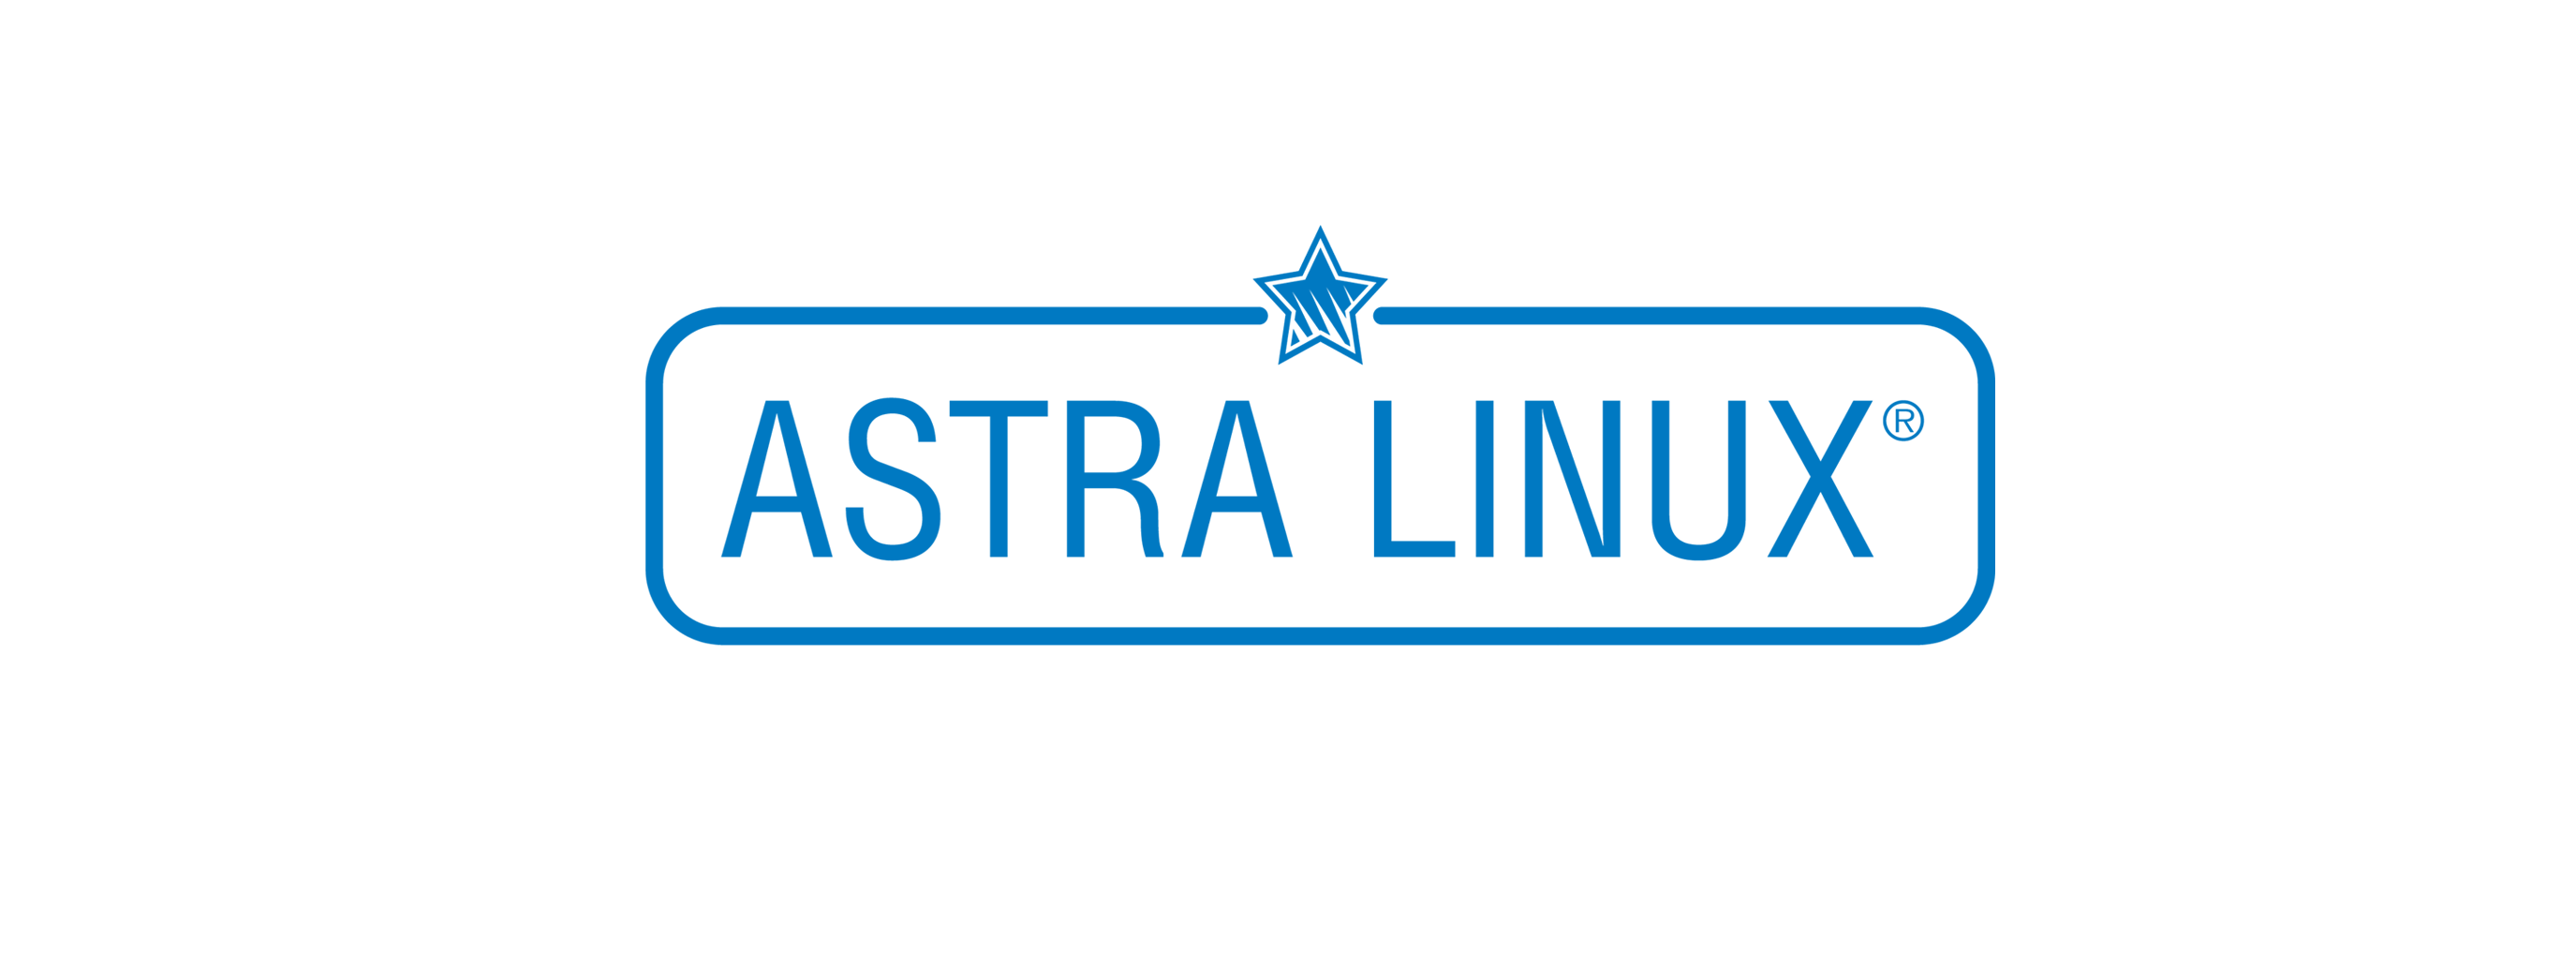 Лицензия РусБИТех Astra Linux Special Edition (очередное обновление 1.7), уровень защищенности Максимальный (Смоленск), РУСБ.10015-01 (ФСТЭК), Russian, на 24 месяца базовая лицензия для рабочей станции, диск (OS2101X8617DSK000WS02-SO24) Astra Linux Special Edition (очередное обновление 1.7), уровень защищенности Максимальный (Смоленск) - фото 1